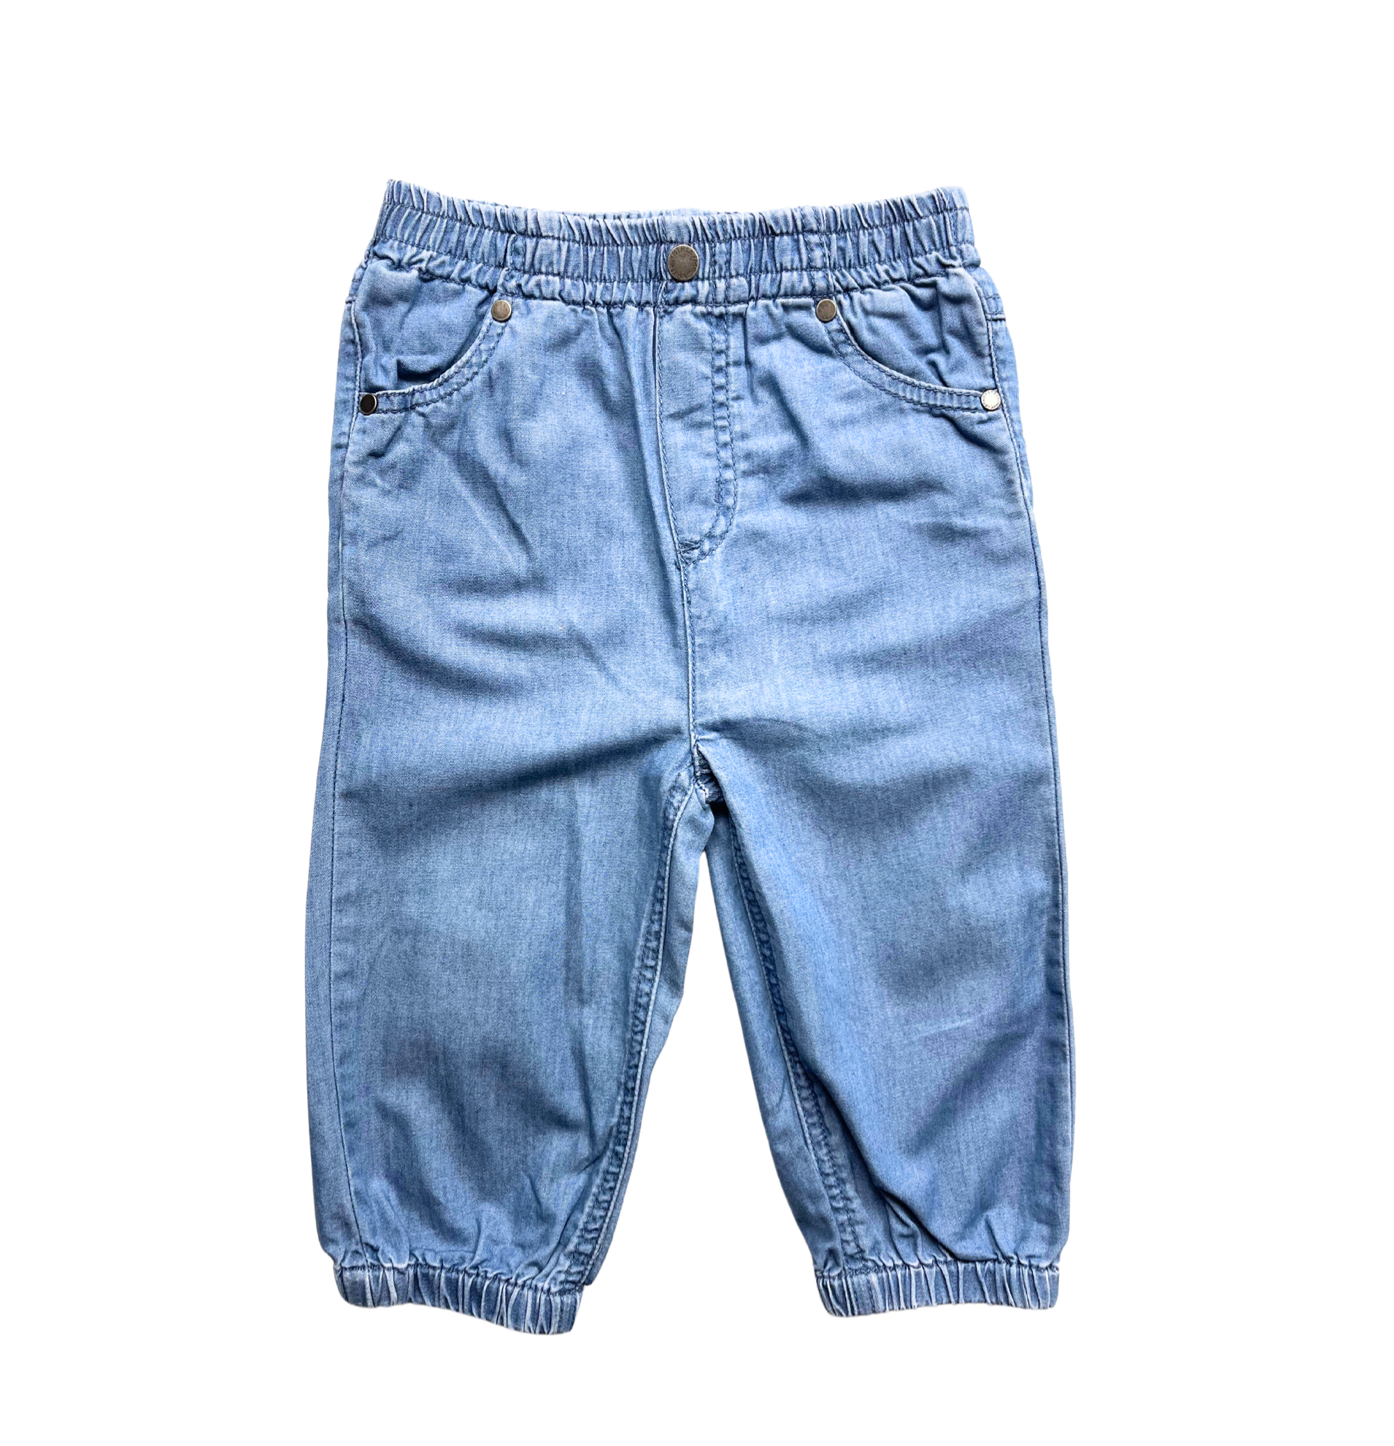 STELLA MCCARTNEY - Pantalon bleu en denim brodé au dos - 18 mois